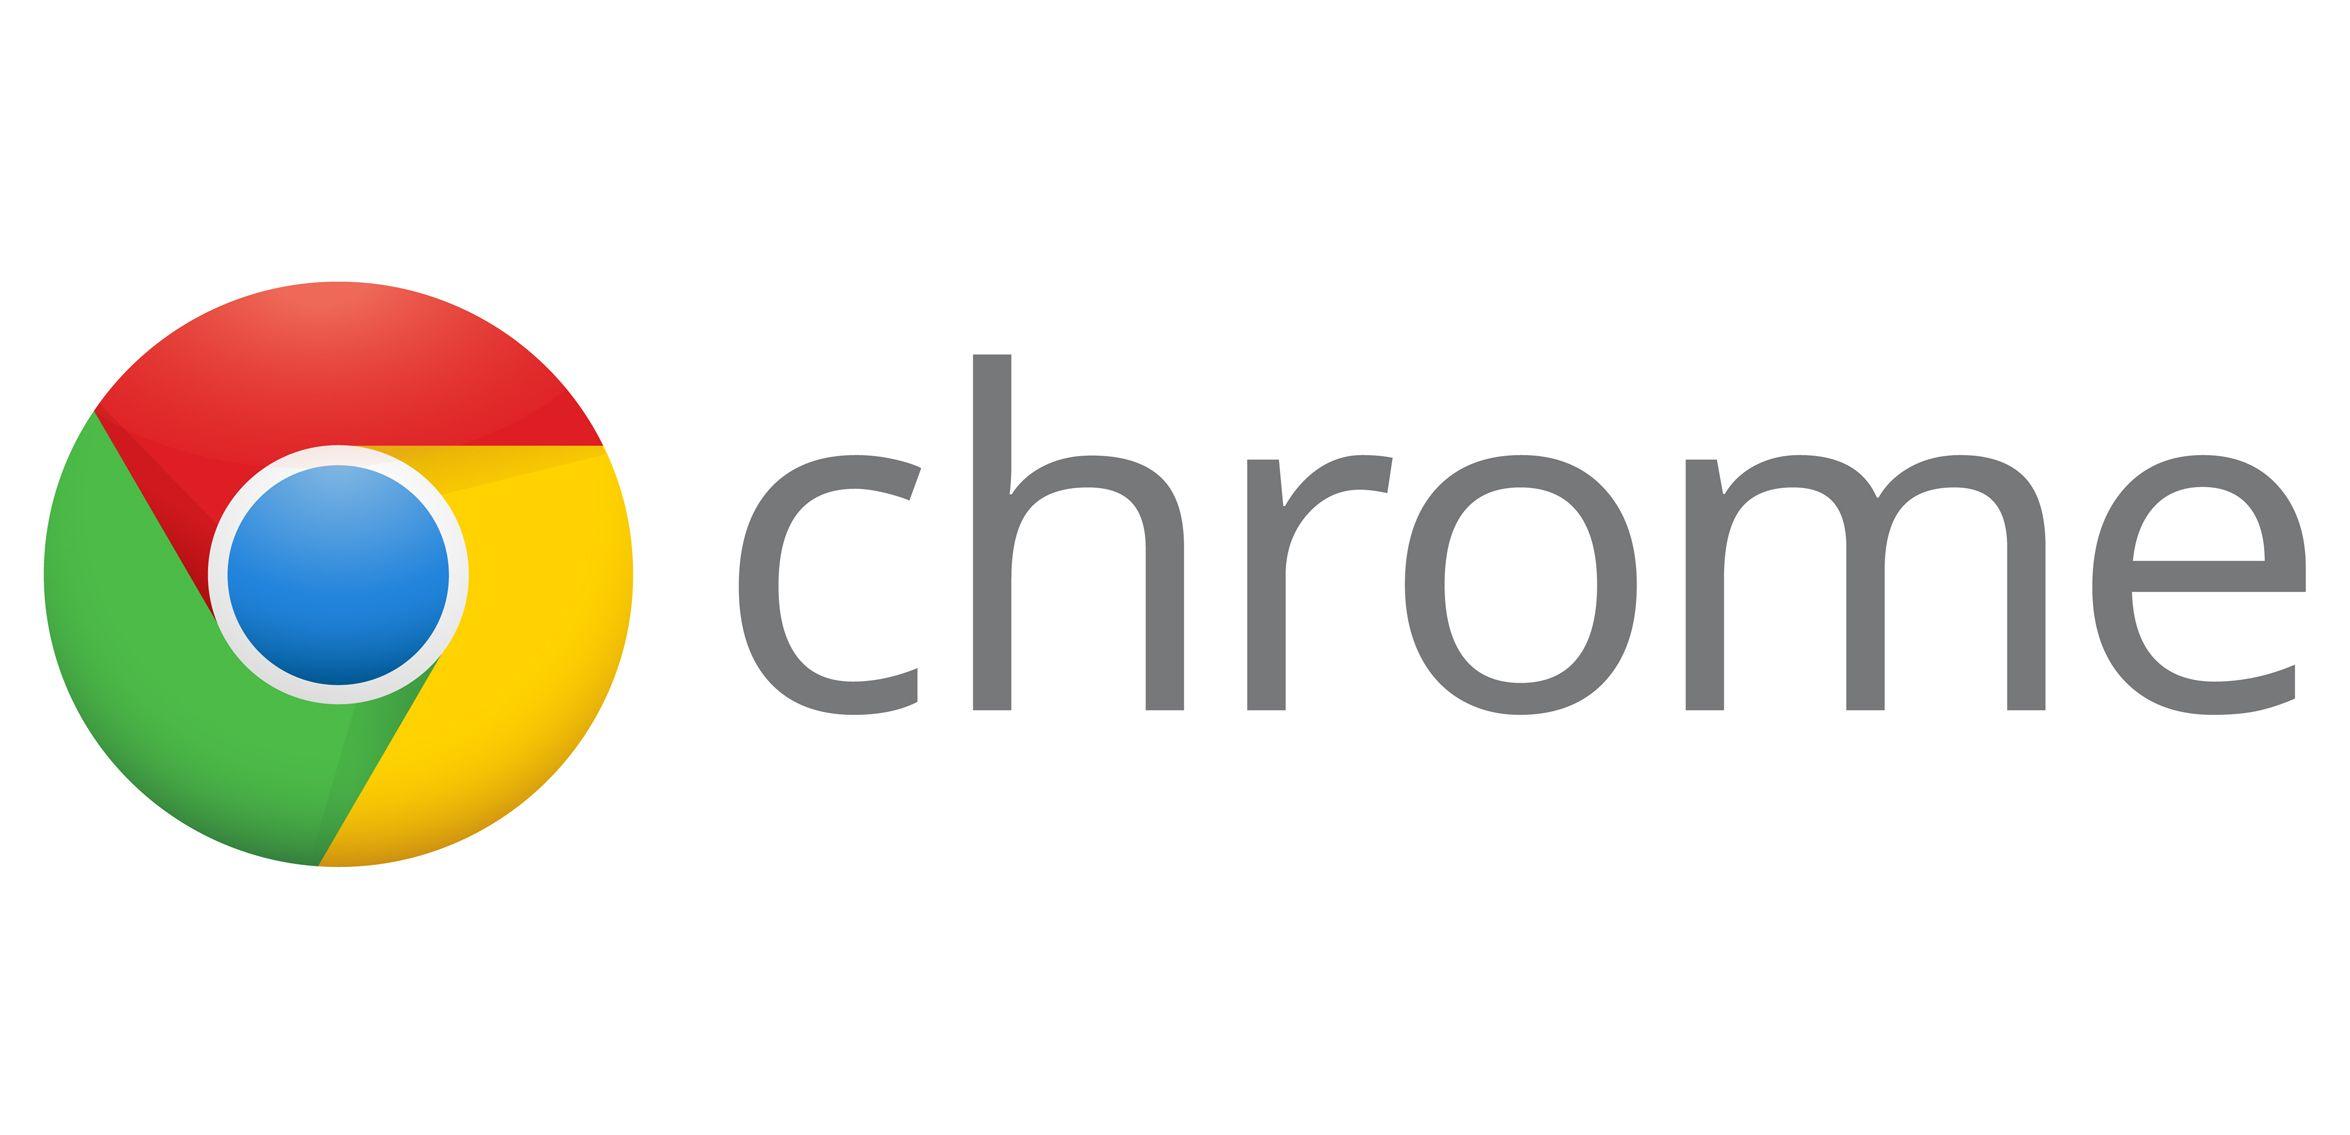 Original Google Chrome Logo - Chrome Logo, Chrome Symbol, Meaning, History and Evolution